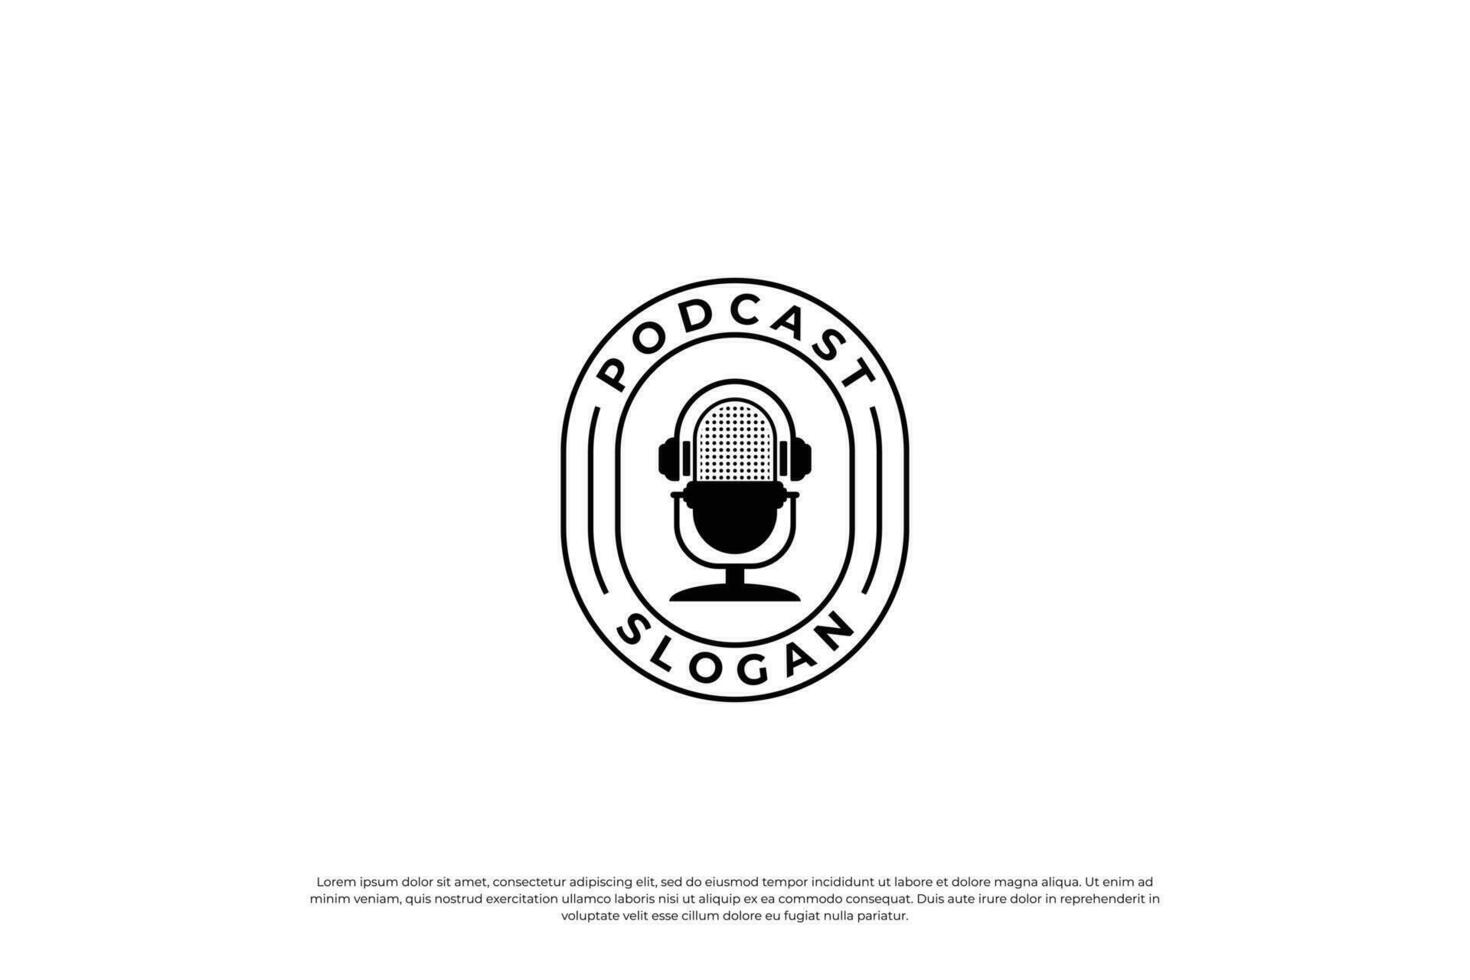 podcast emblemas. rádio logotipo, transmissão e estúdio Distintivos com vintage microfones. vetor